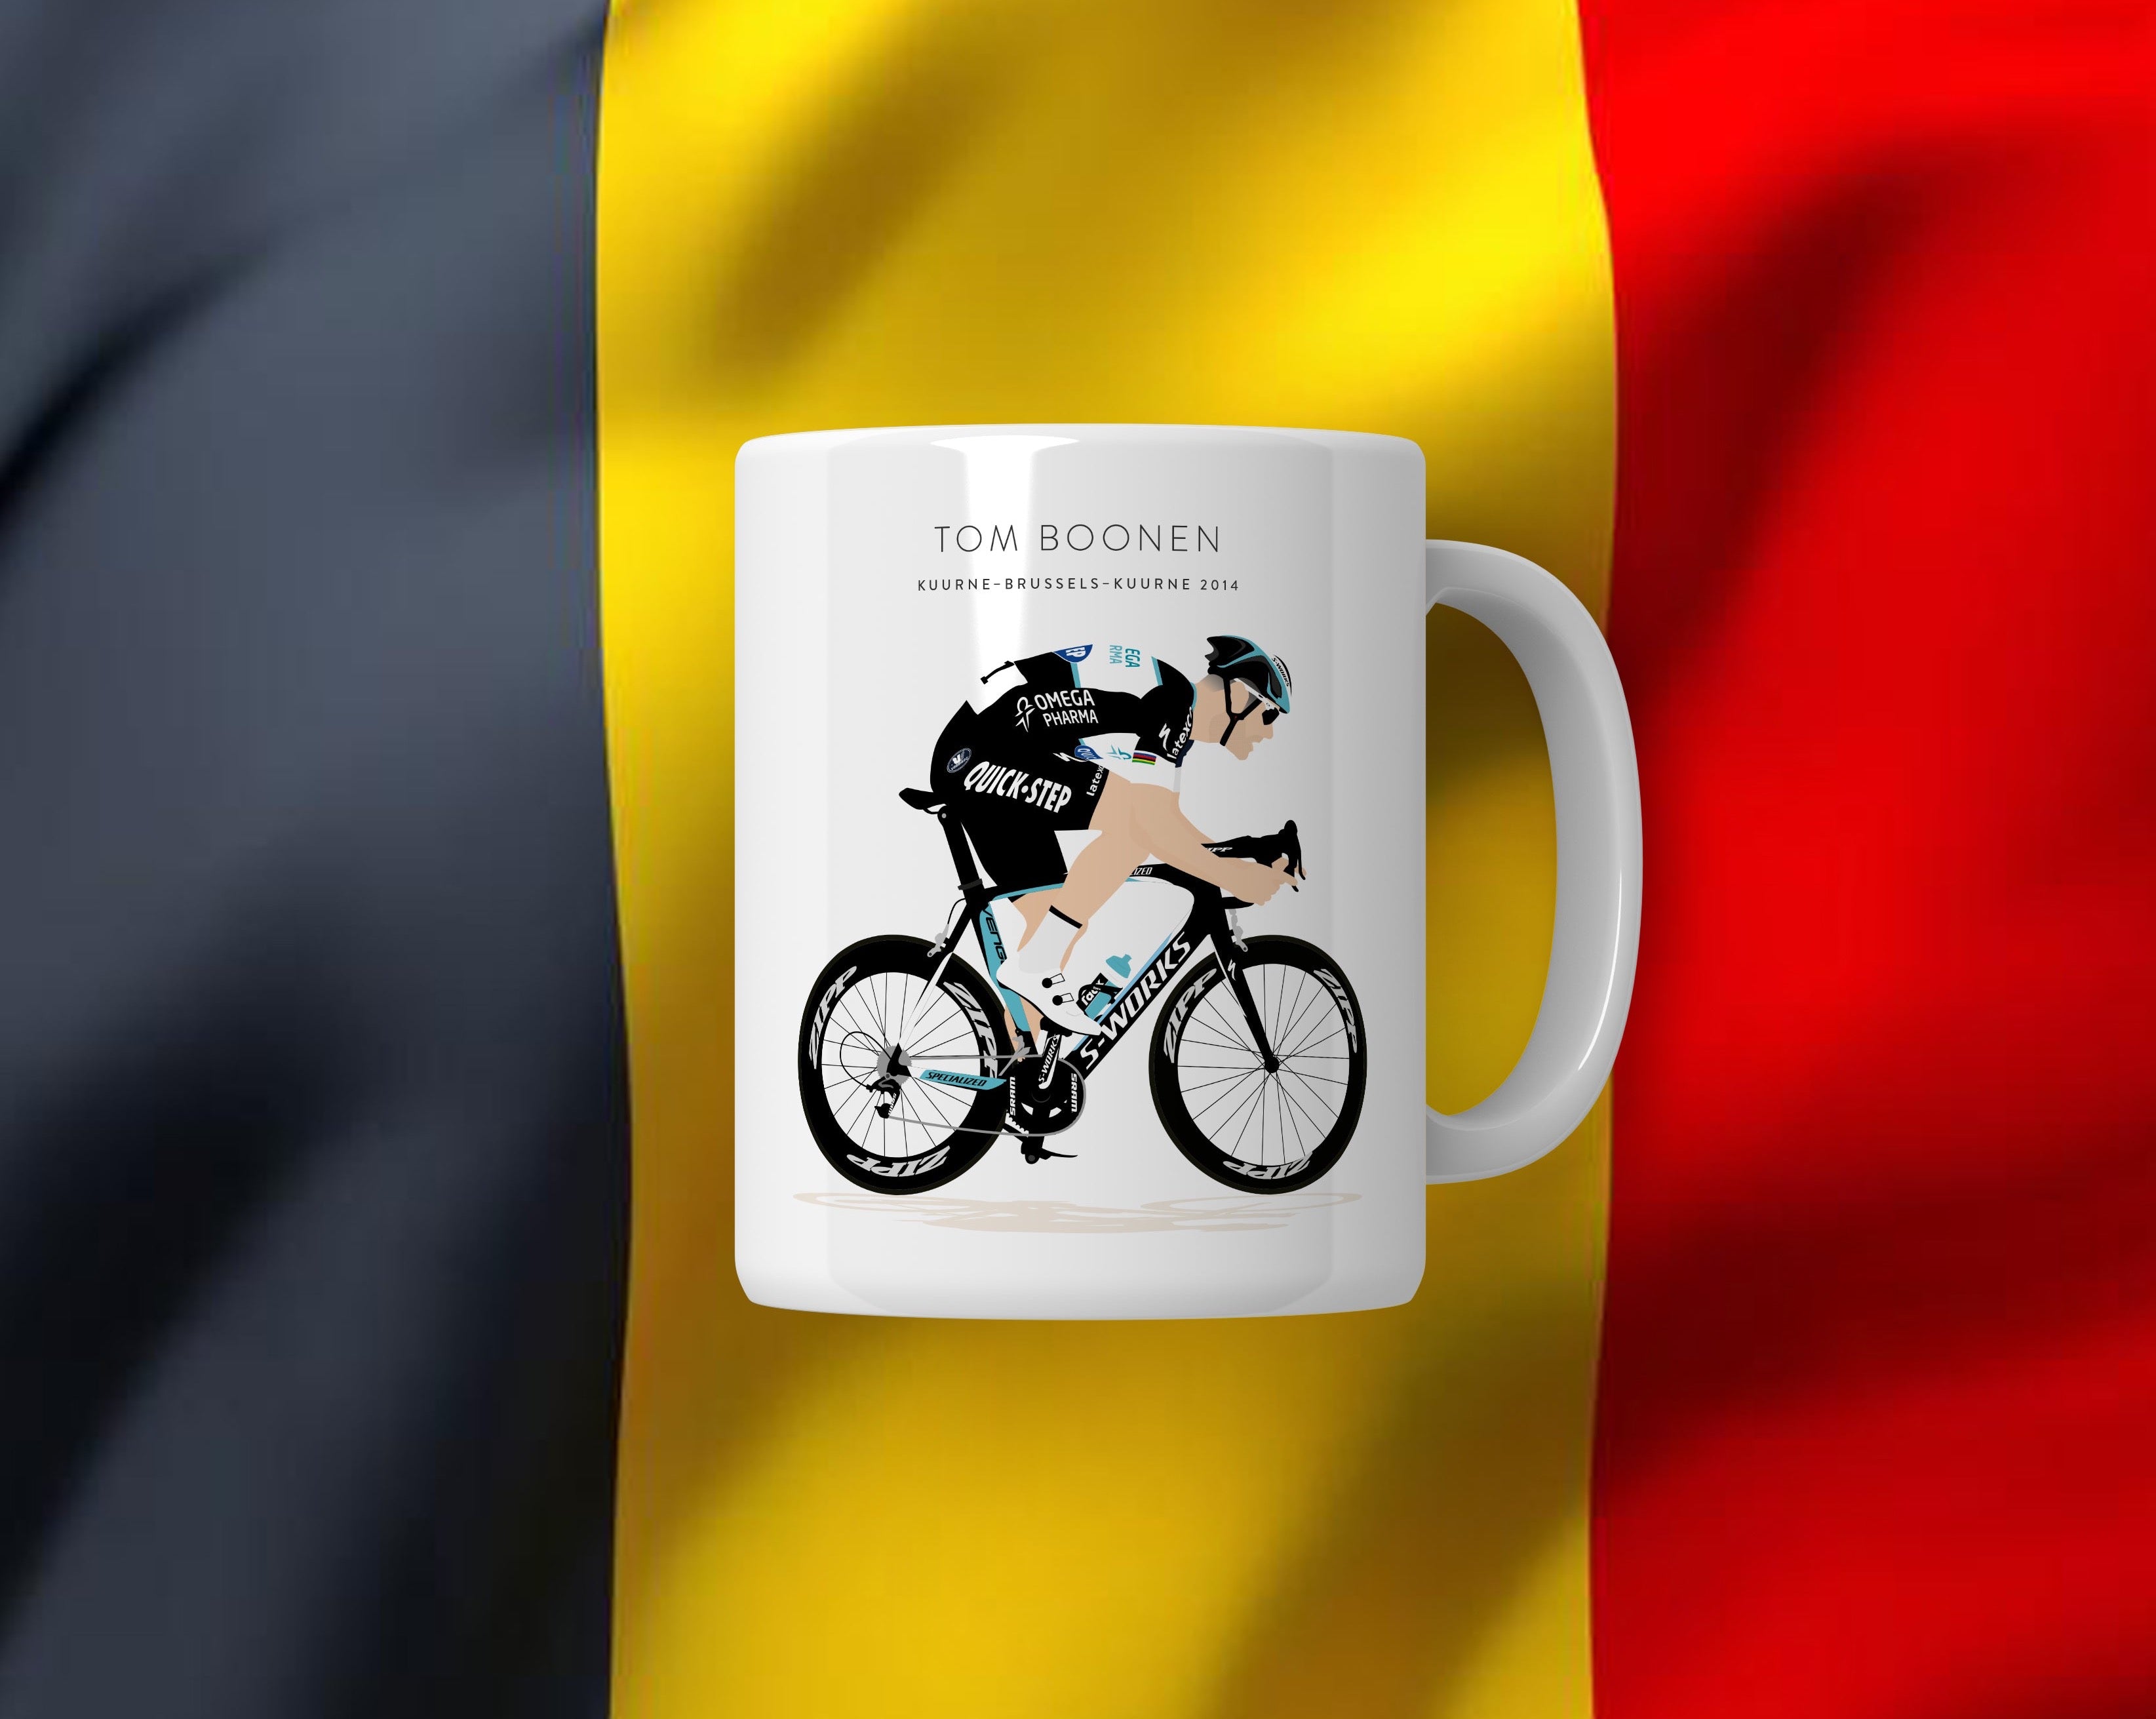 Tom Boonen, Kuurne Brussels Kuurne 2014 - Signature Coffee Mug